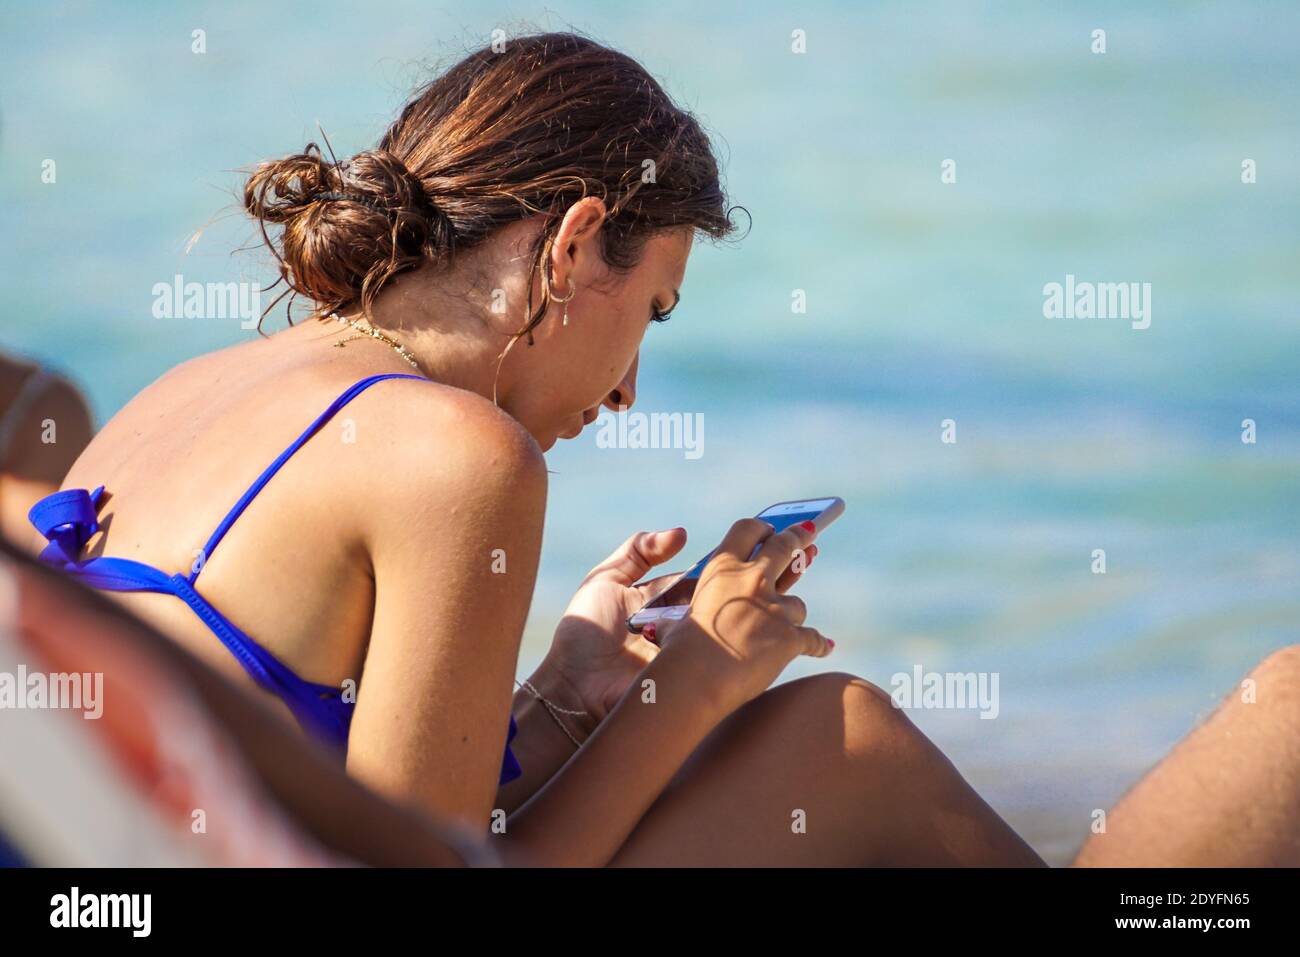 Sardegna , Italia - 28 de julio de 2020 : turistas no identificados o personas que se relajan haciendo actividades de ocio en la playa en italia Foto de stock